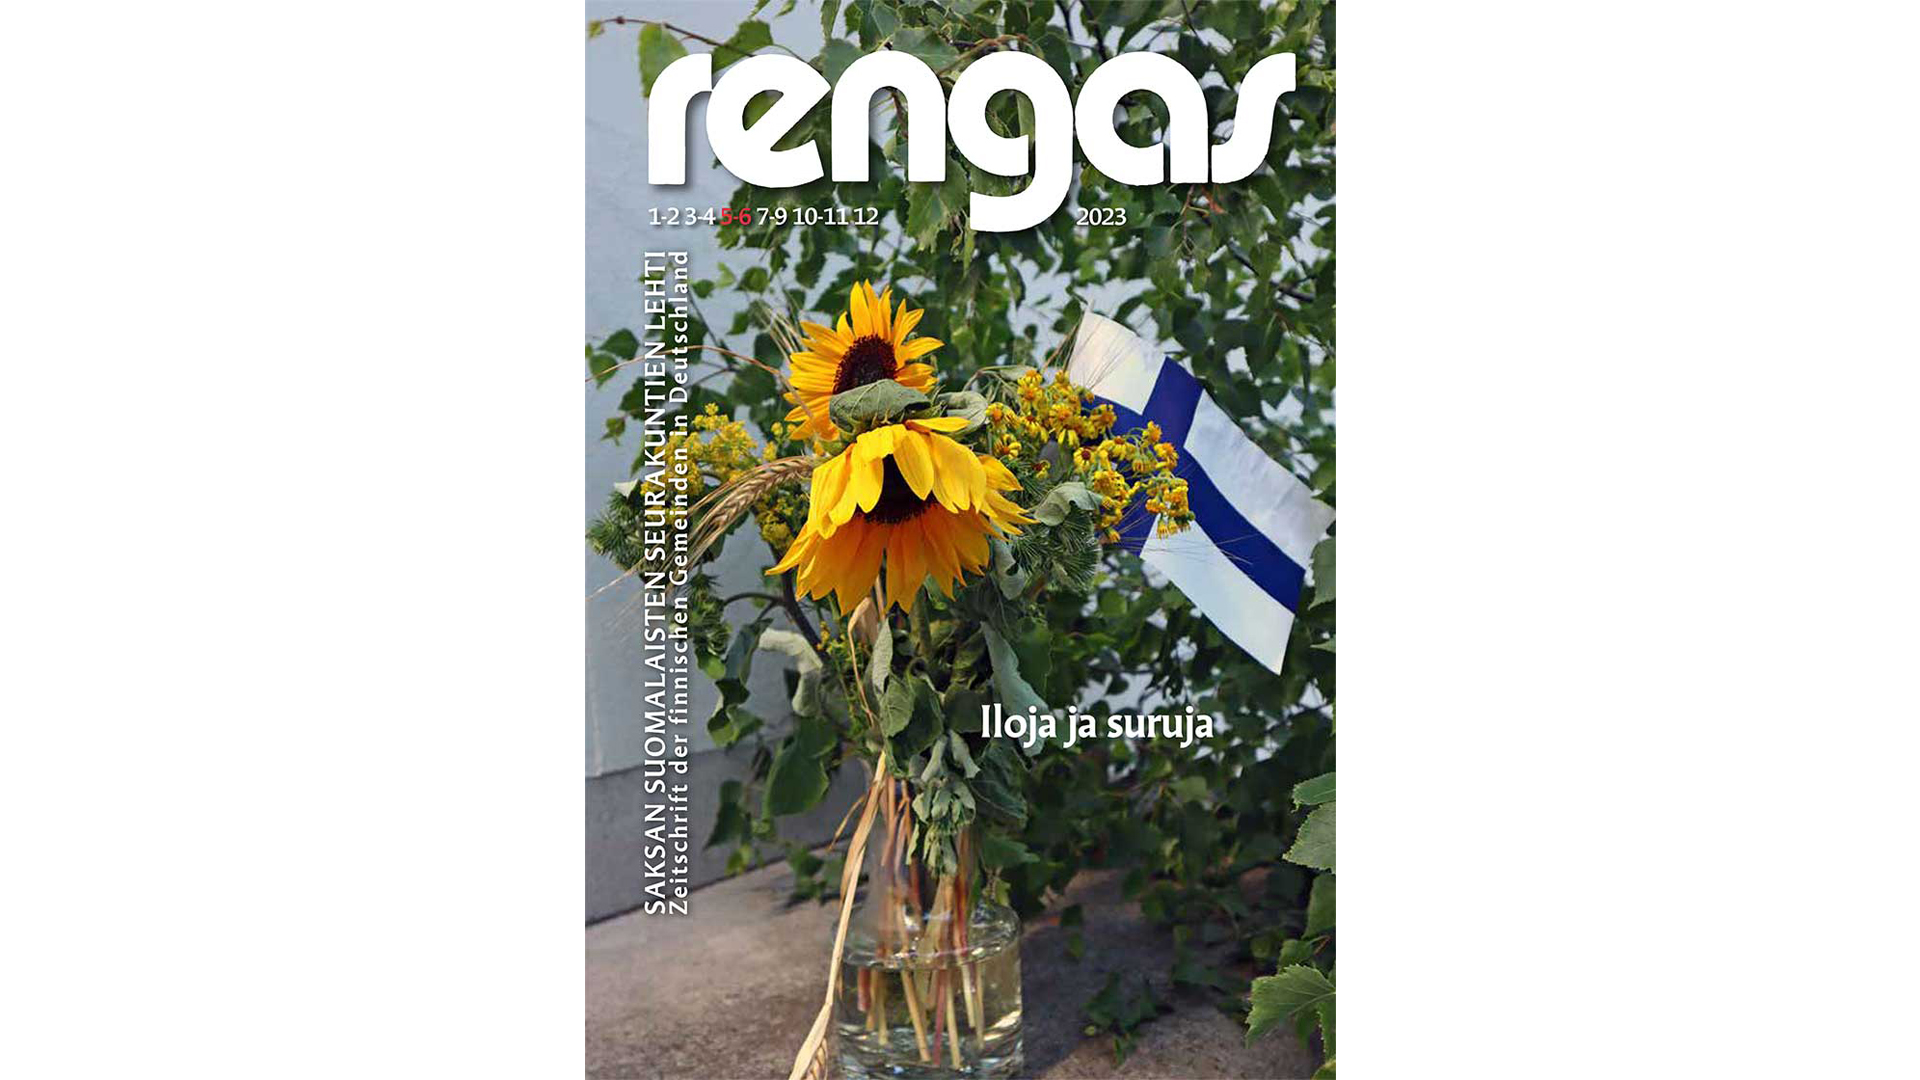 Rengas-lehden 5-6 kansikuva, auringonkukkakimppu jossa Suomen lippu